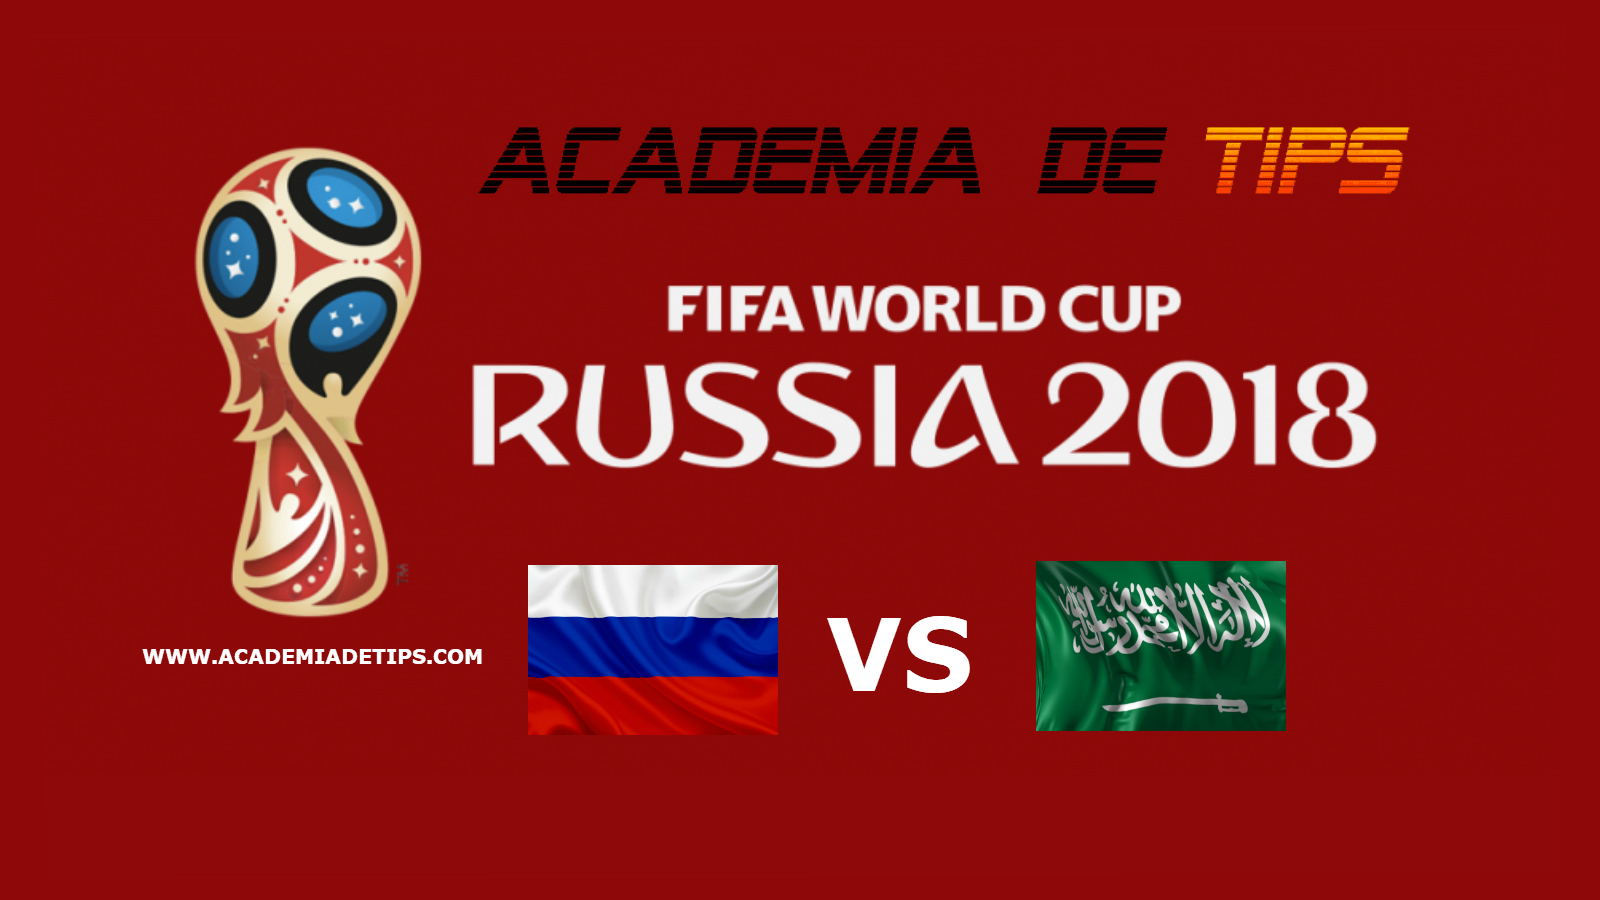 Rússia vs Arábia Saudita - Mundial FIFA 2018 • Chega o dia mais aguardado, a estreia do Mundial FIFA 2018, com a Rússia a receber a Arábia Saudita.